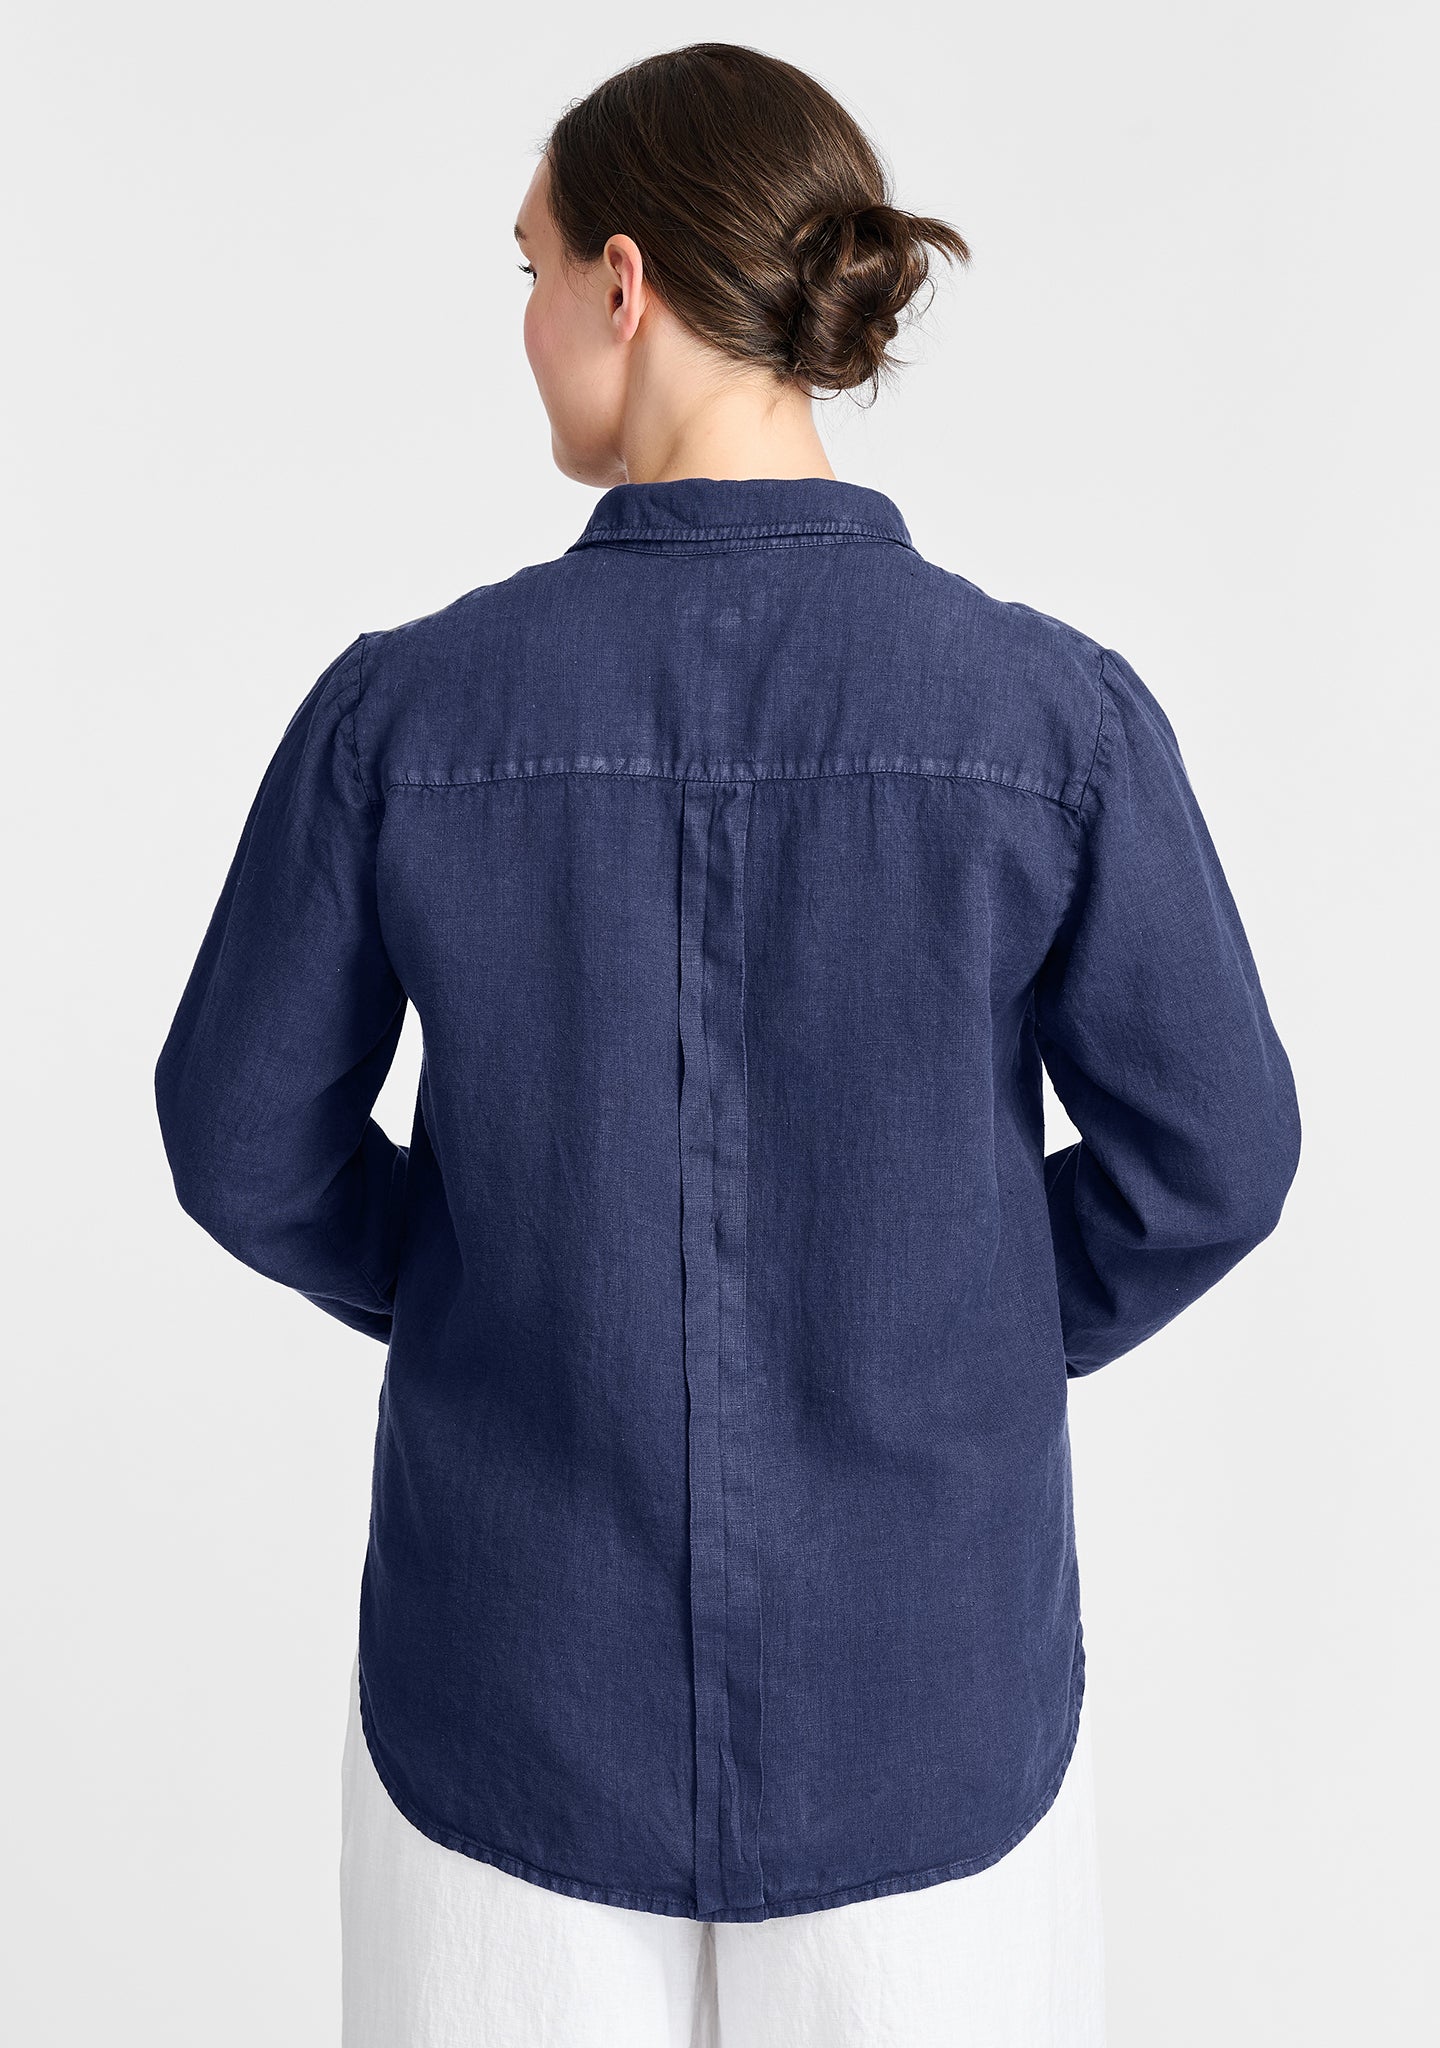 crossroads blouse linen button down shirt details